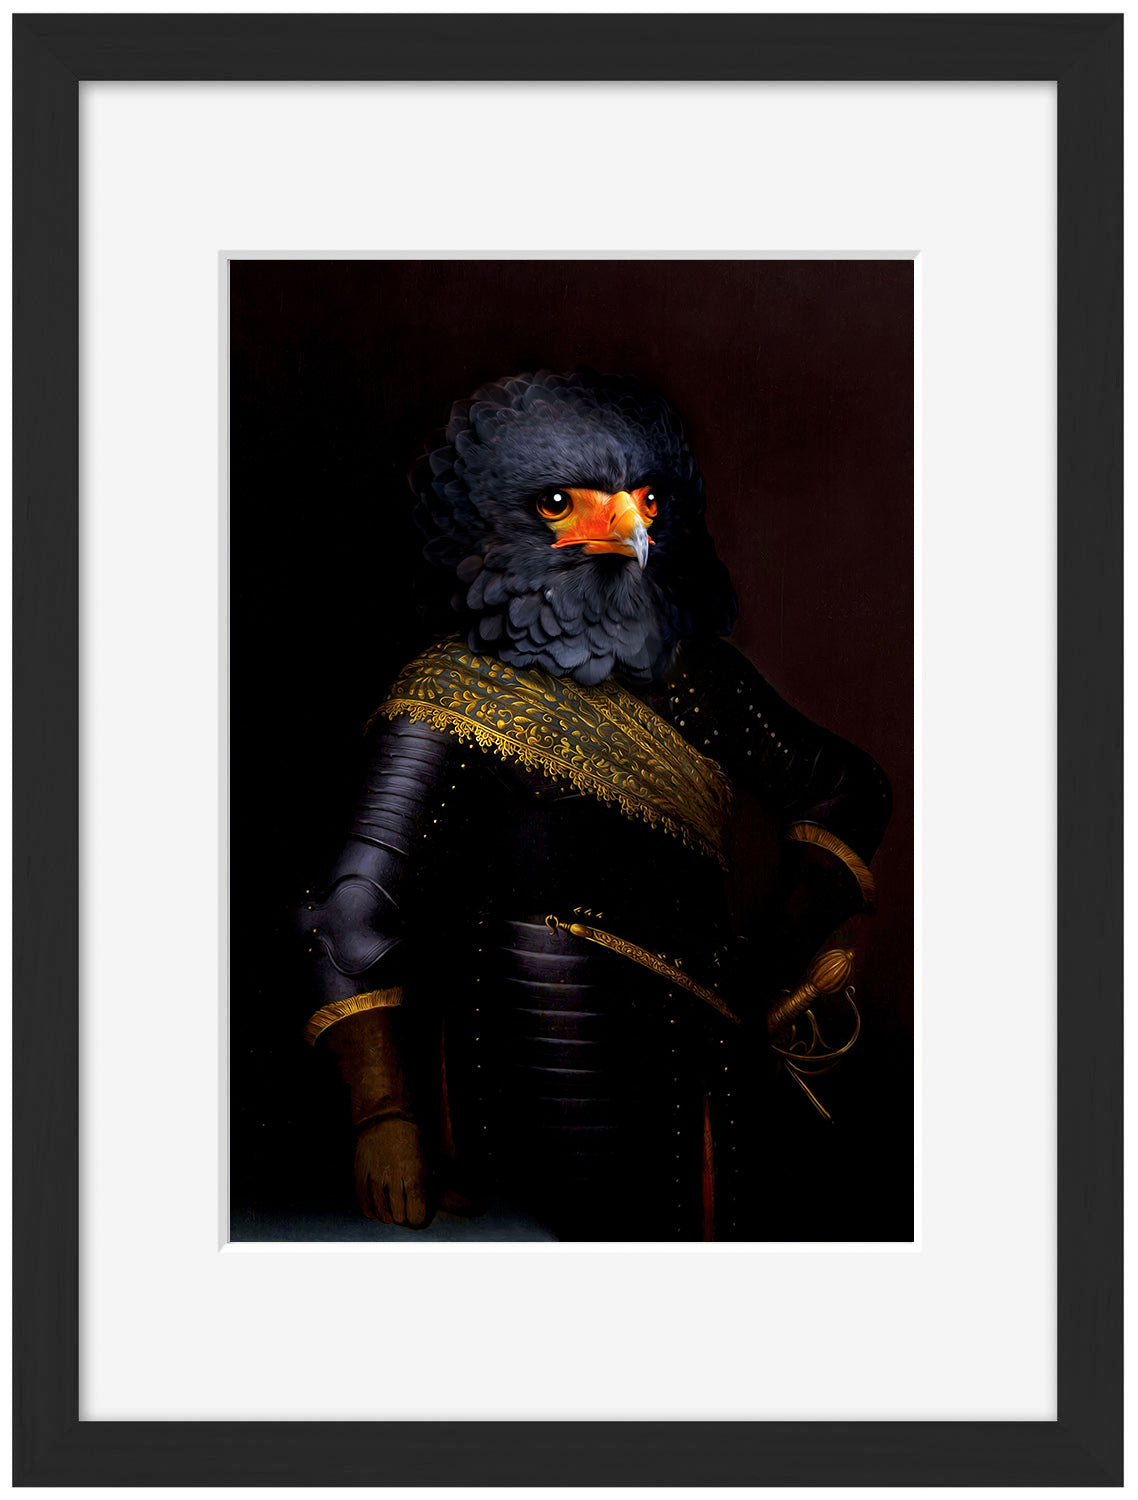 Connor-print, tein-lucasson-Framed Print-30 x 40 cm-BLUE SHAKER